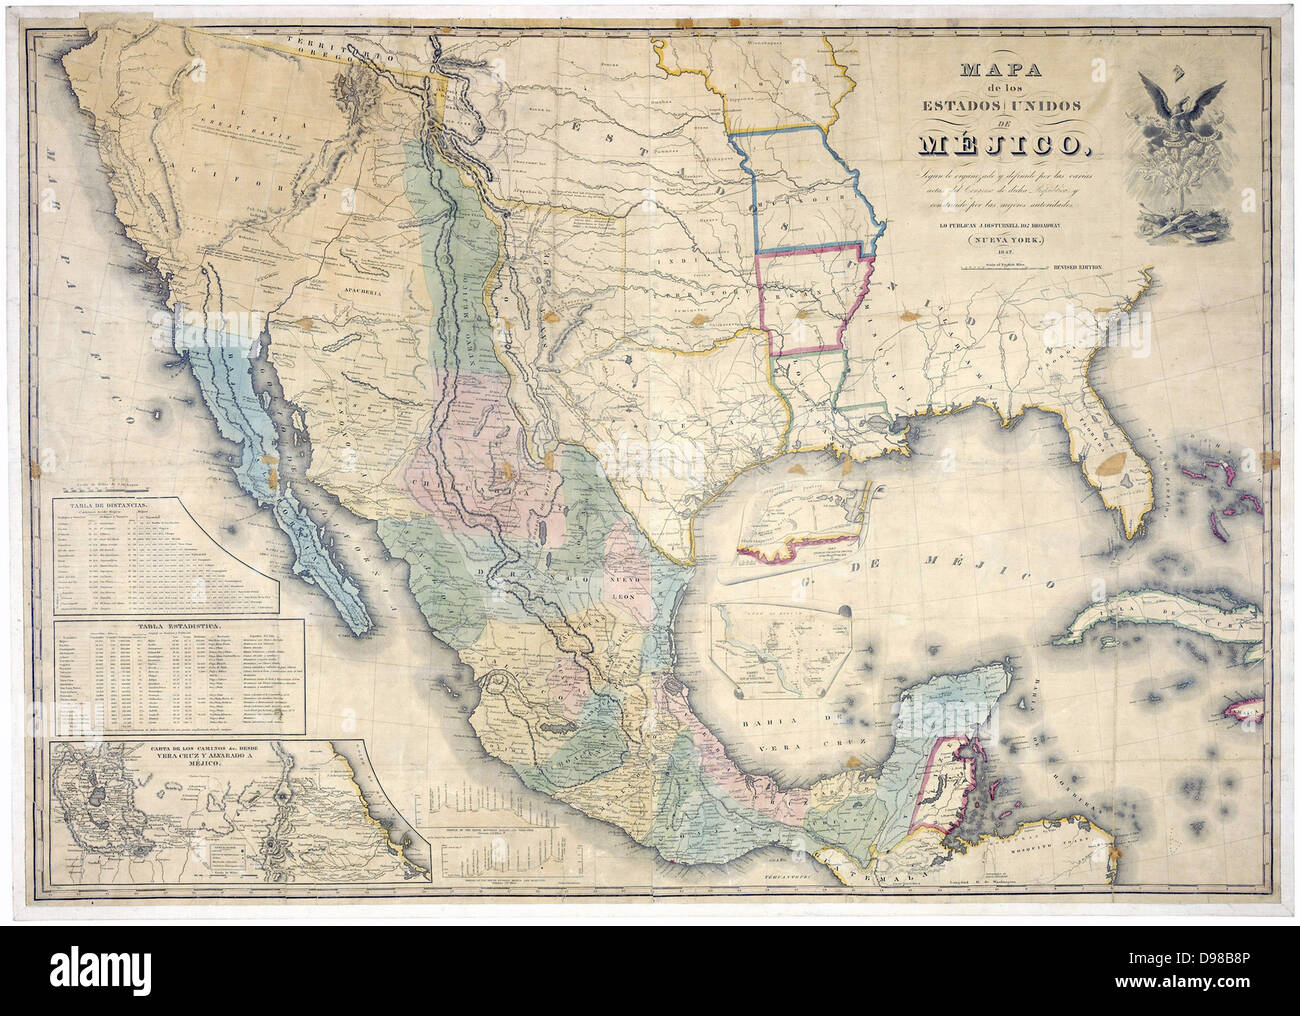 Carte des États-Unis du Mexique, 1847 publié par Disturnall J. Cela a été annexée au Traité de Guadalupe-Hidalgo qui a mis fin à la Guerre du Mexique (1846-1848), et montre la région de la Californie et le Mexique comme Mexican bien qu'ils aient été cédée dans le traité. Il donne aussi les limites et les orthographes mexicain. Banque D'Images